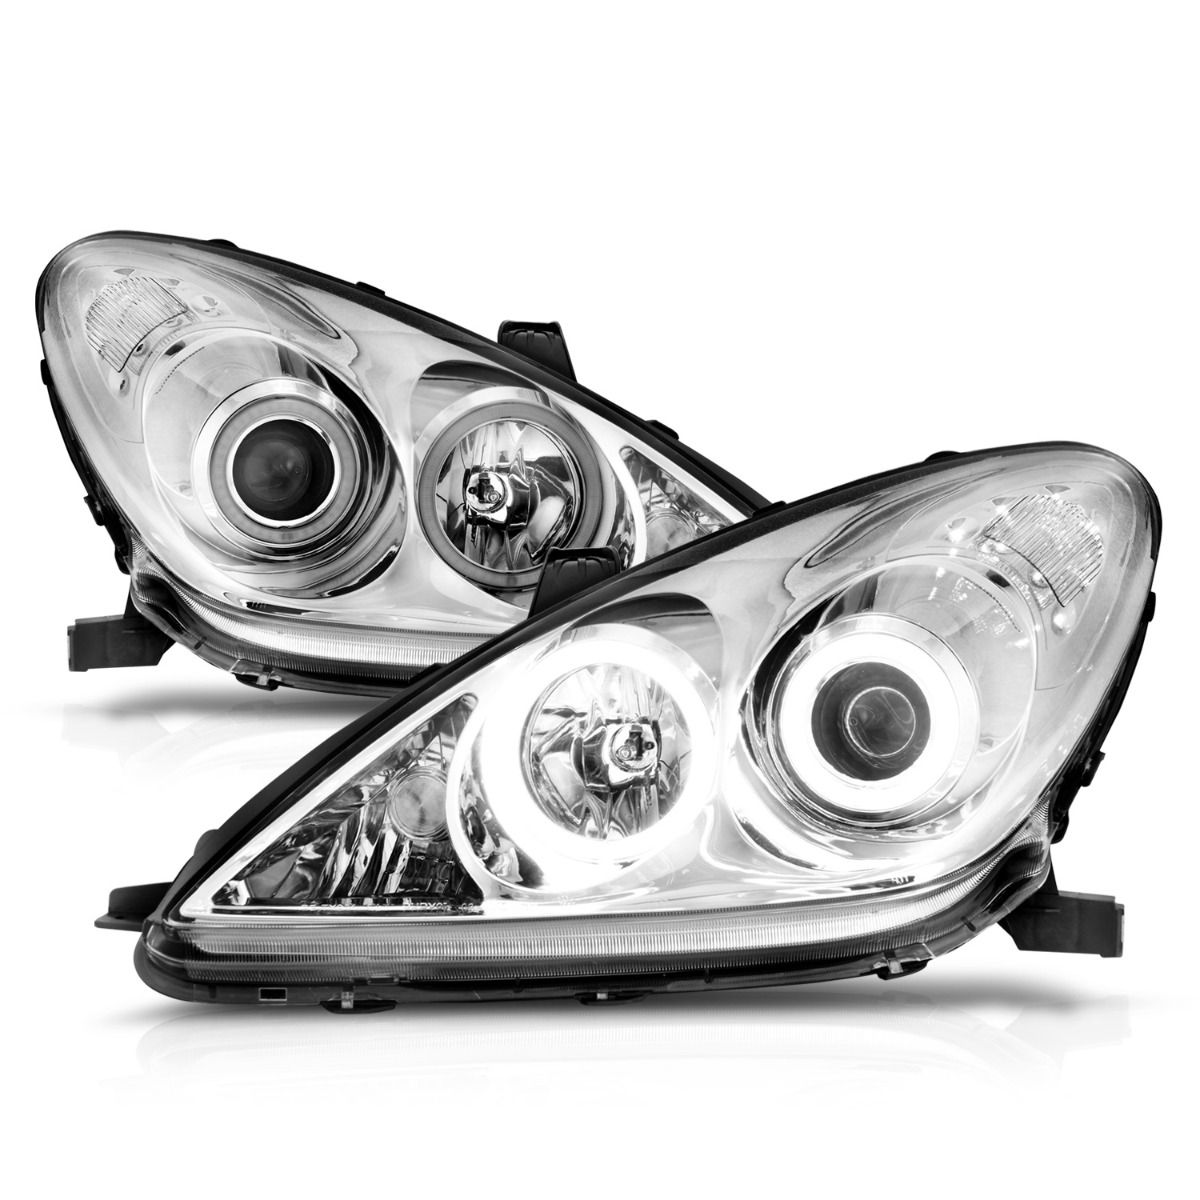 Lexus Projector Headlights, ES 300 Headlights, ES 330 Headlights, Chrome Projector Headlights, Anzo Projector Headlights